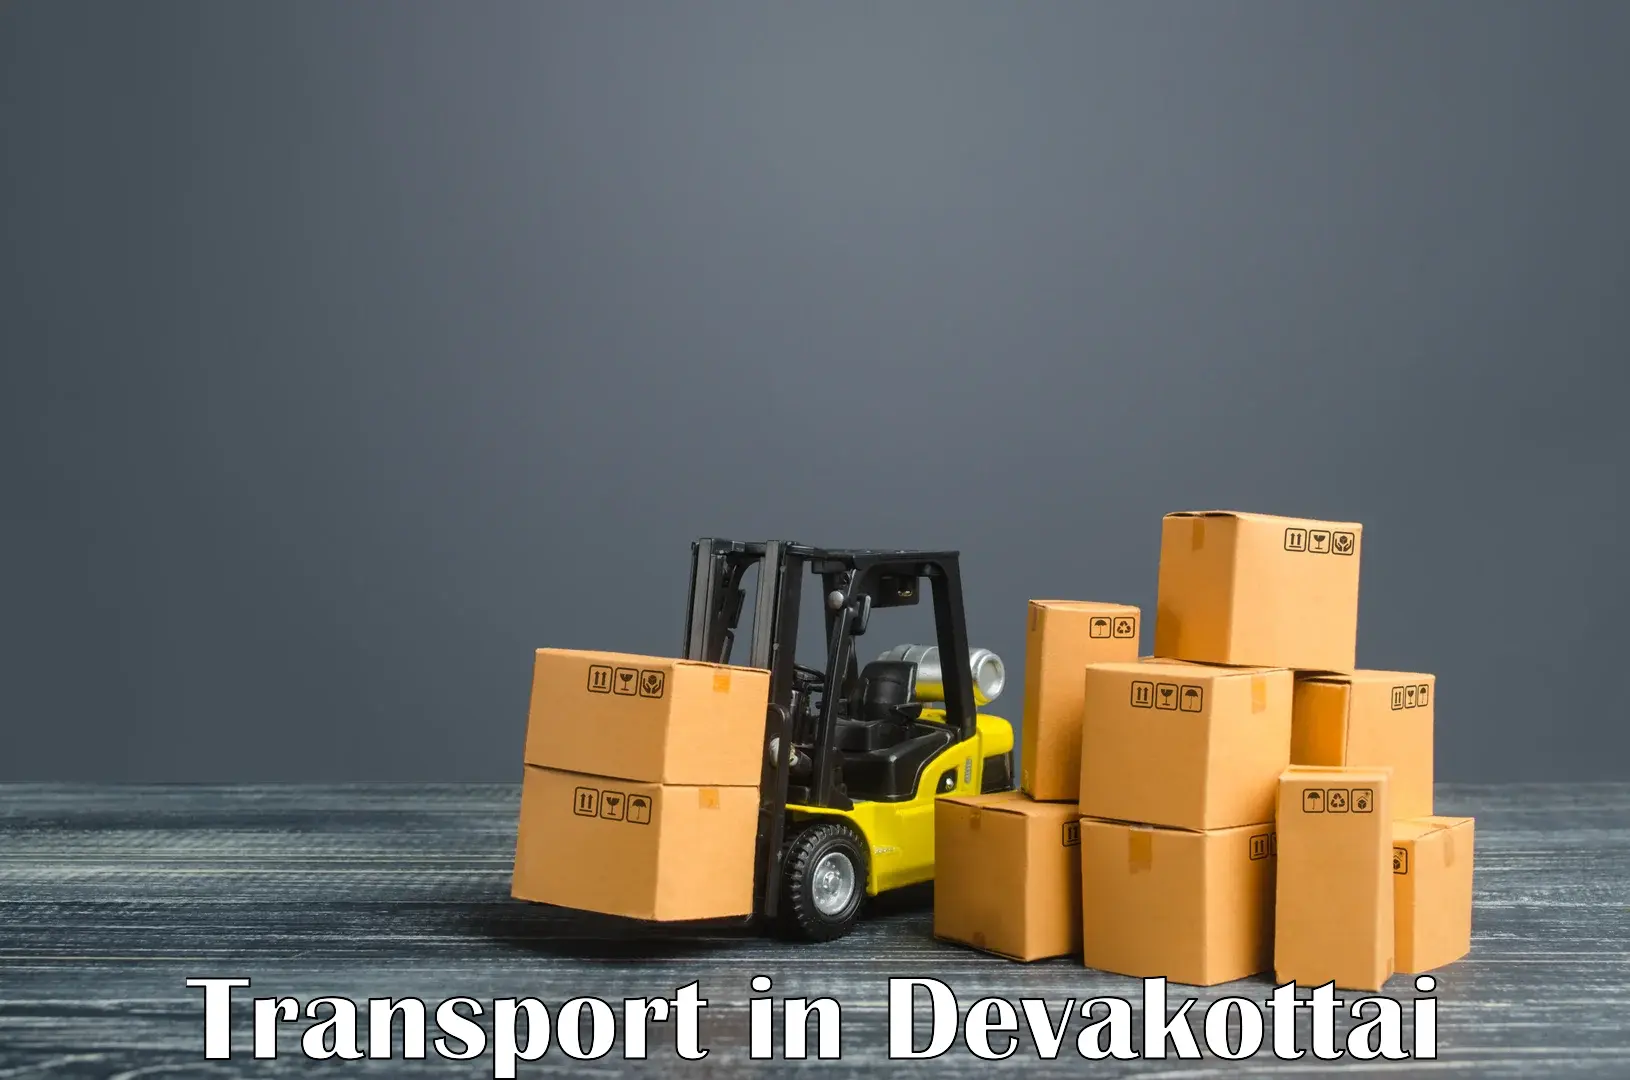 Container transport service in Devakottai